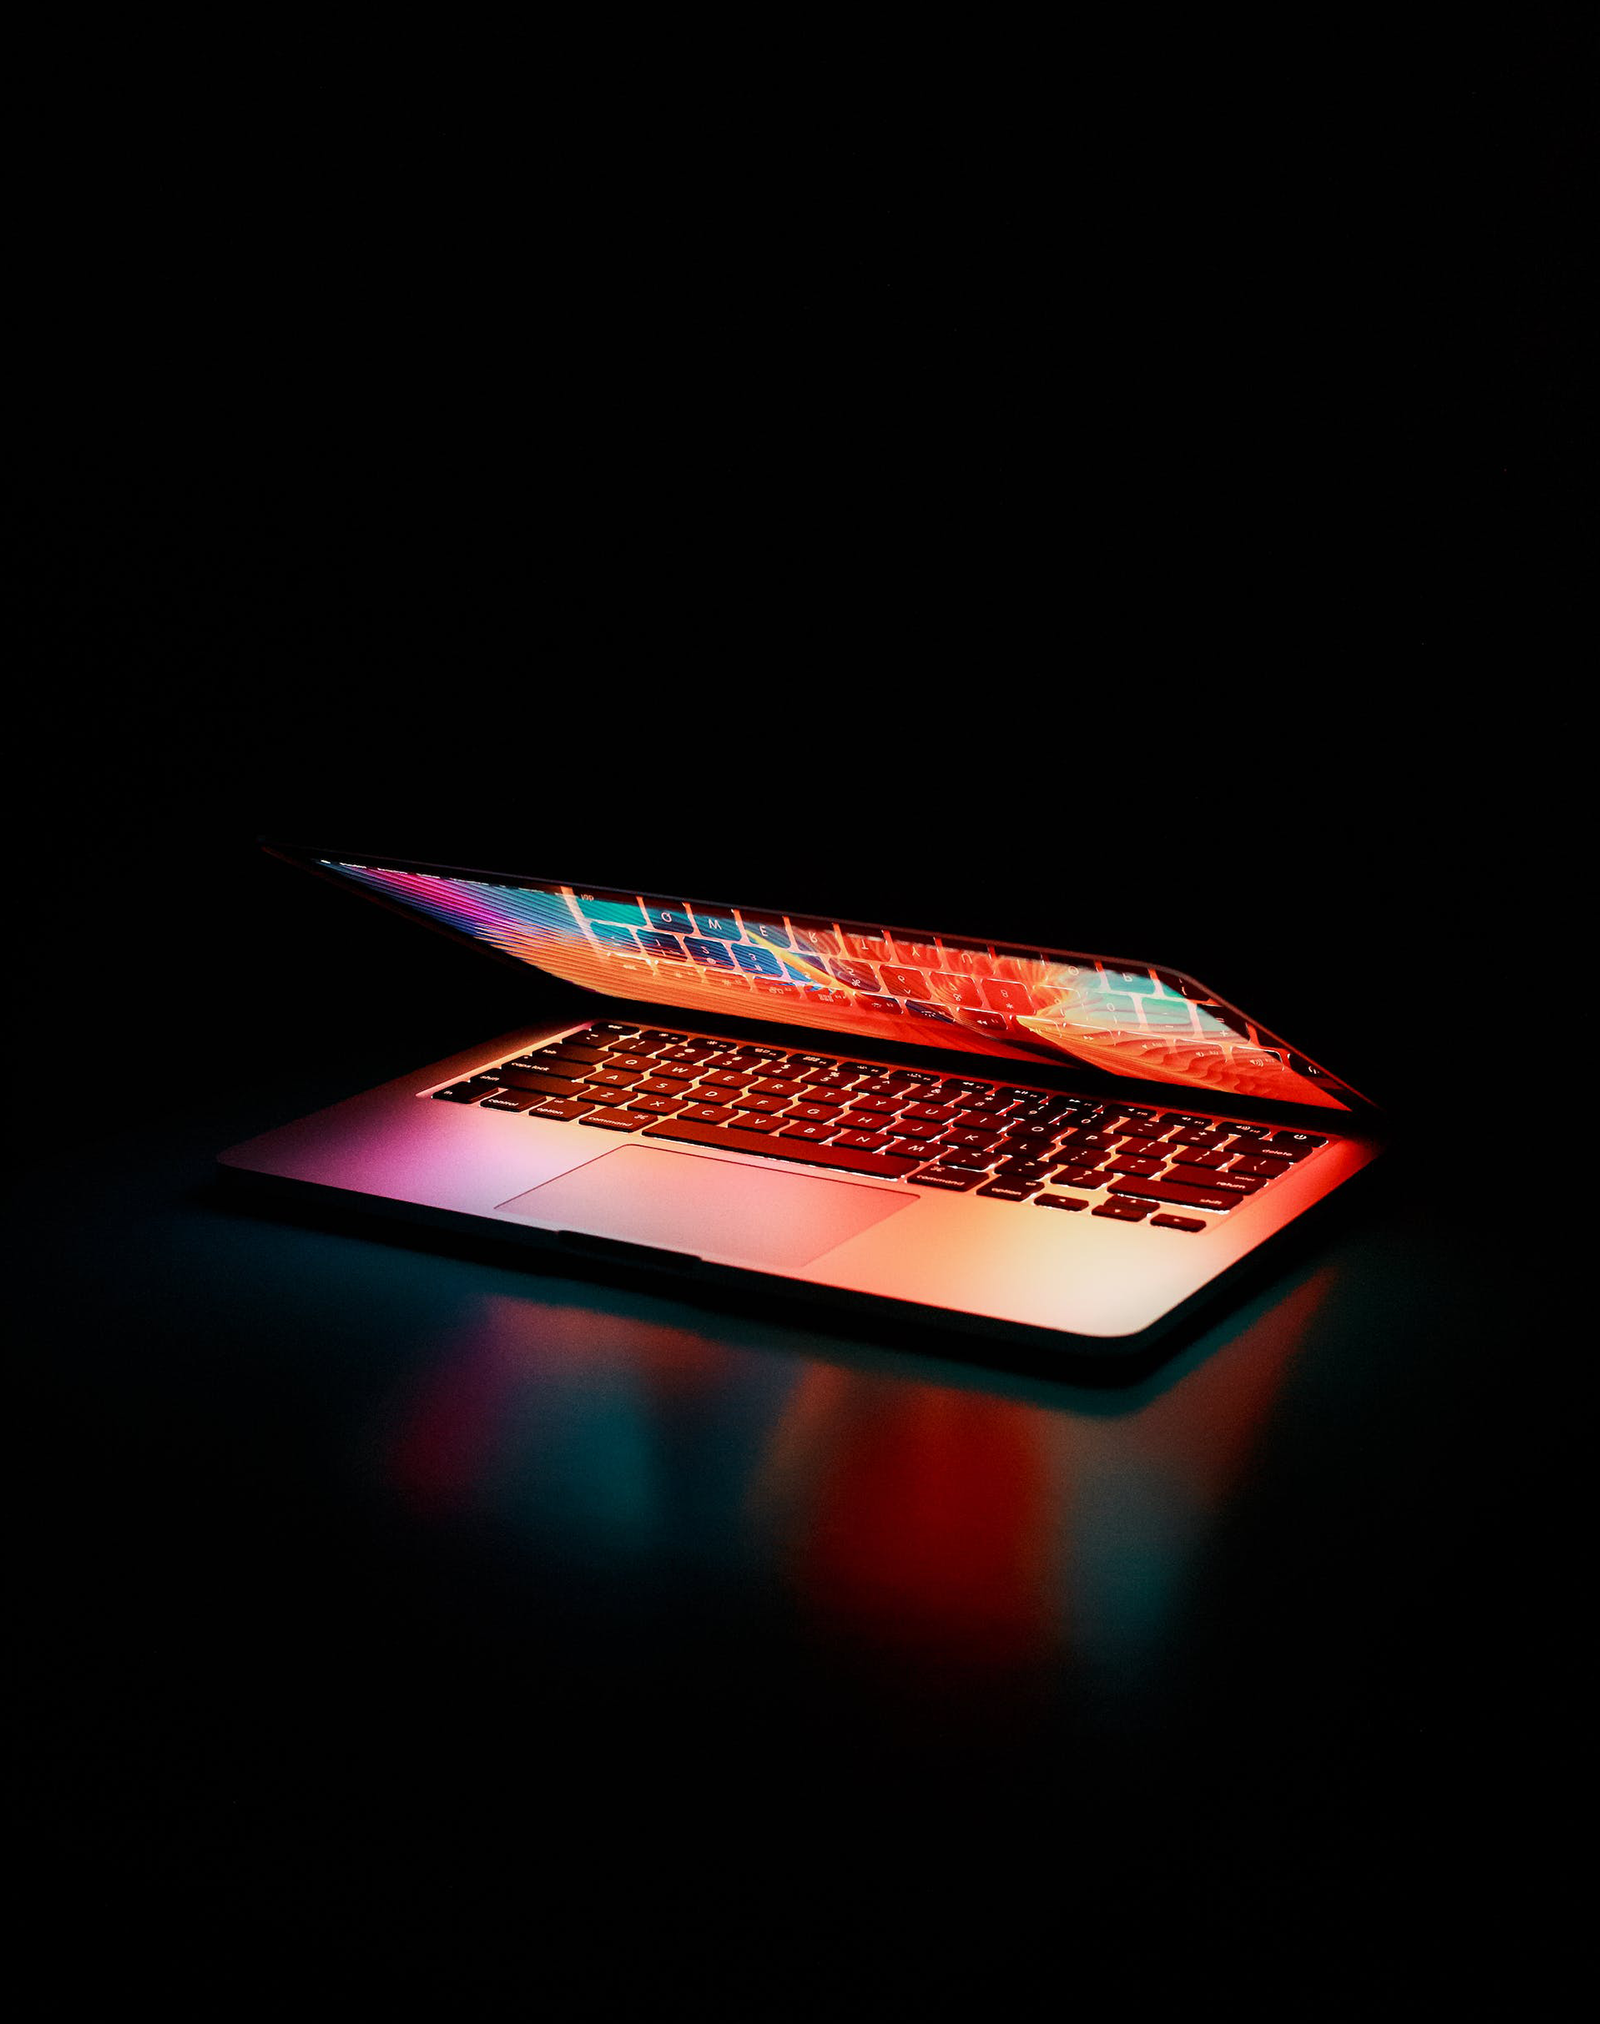 A MacBook half closed in a dark setting